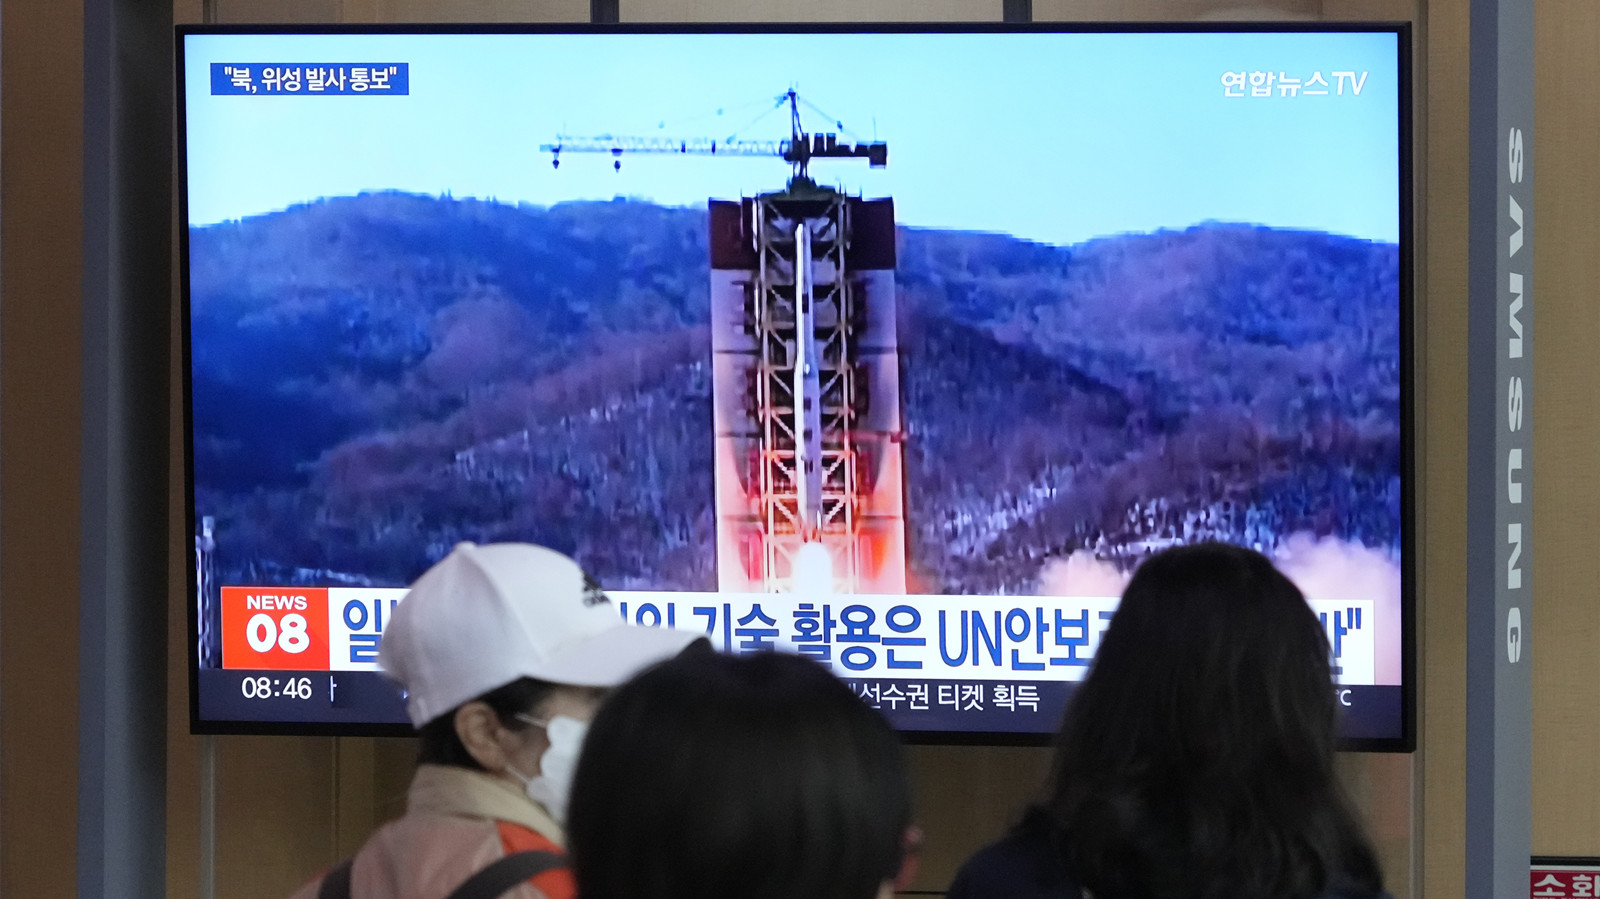 日韓強烈要求平壤取消發射衛星　日防相向自衛隊發出攔截令